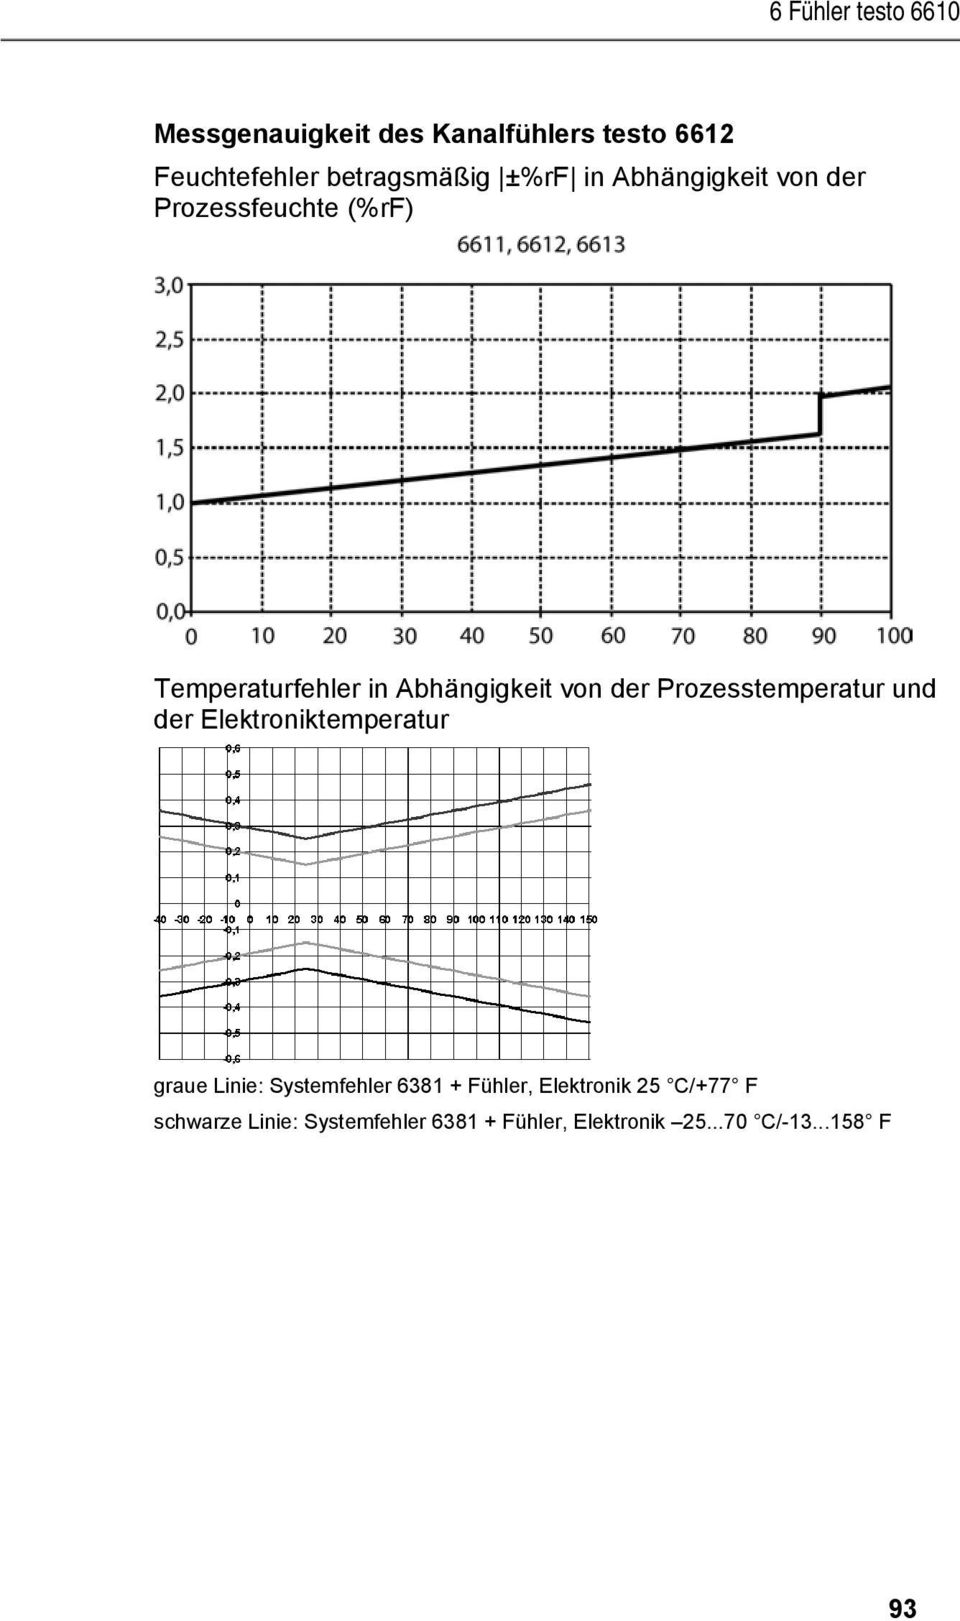 Abhängigkeit von der Prozessfeuchte (%rf) Temperaturfehler in Abhängigkeit von der Prozesstemperatur und der